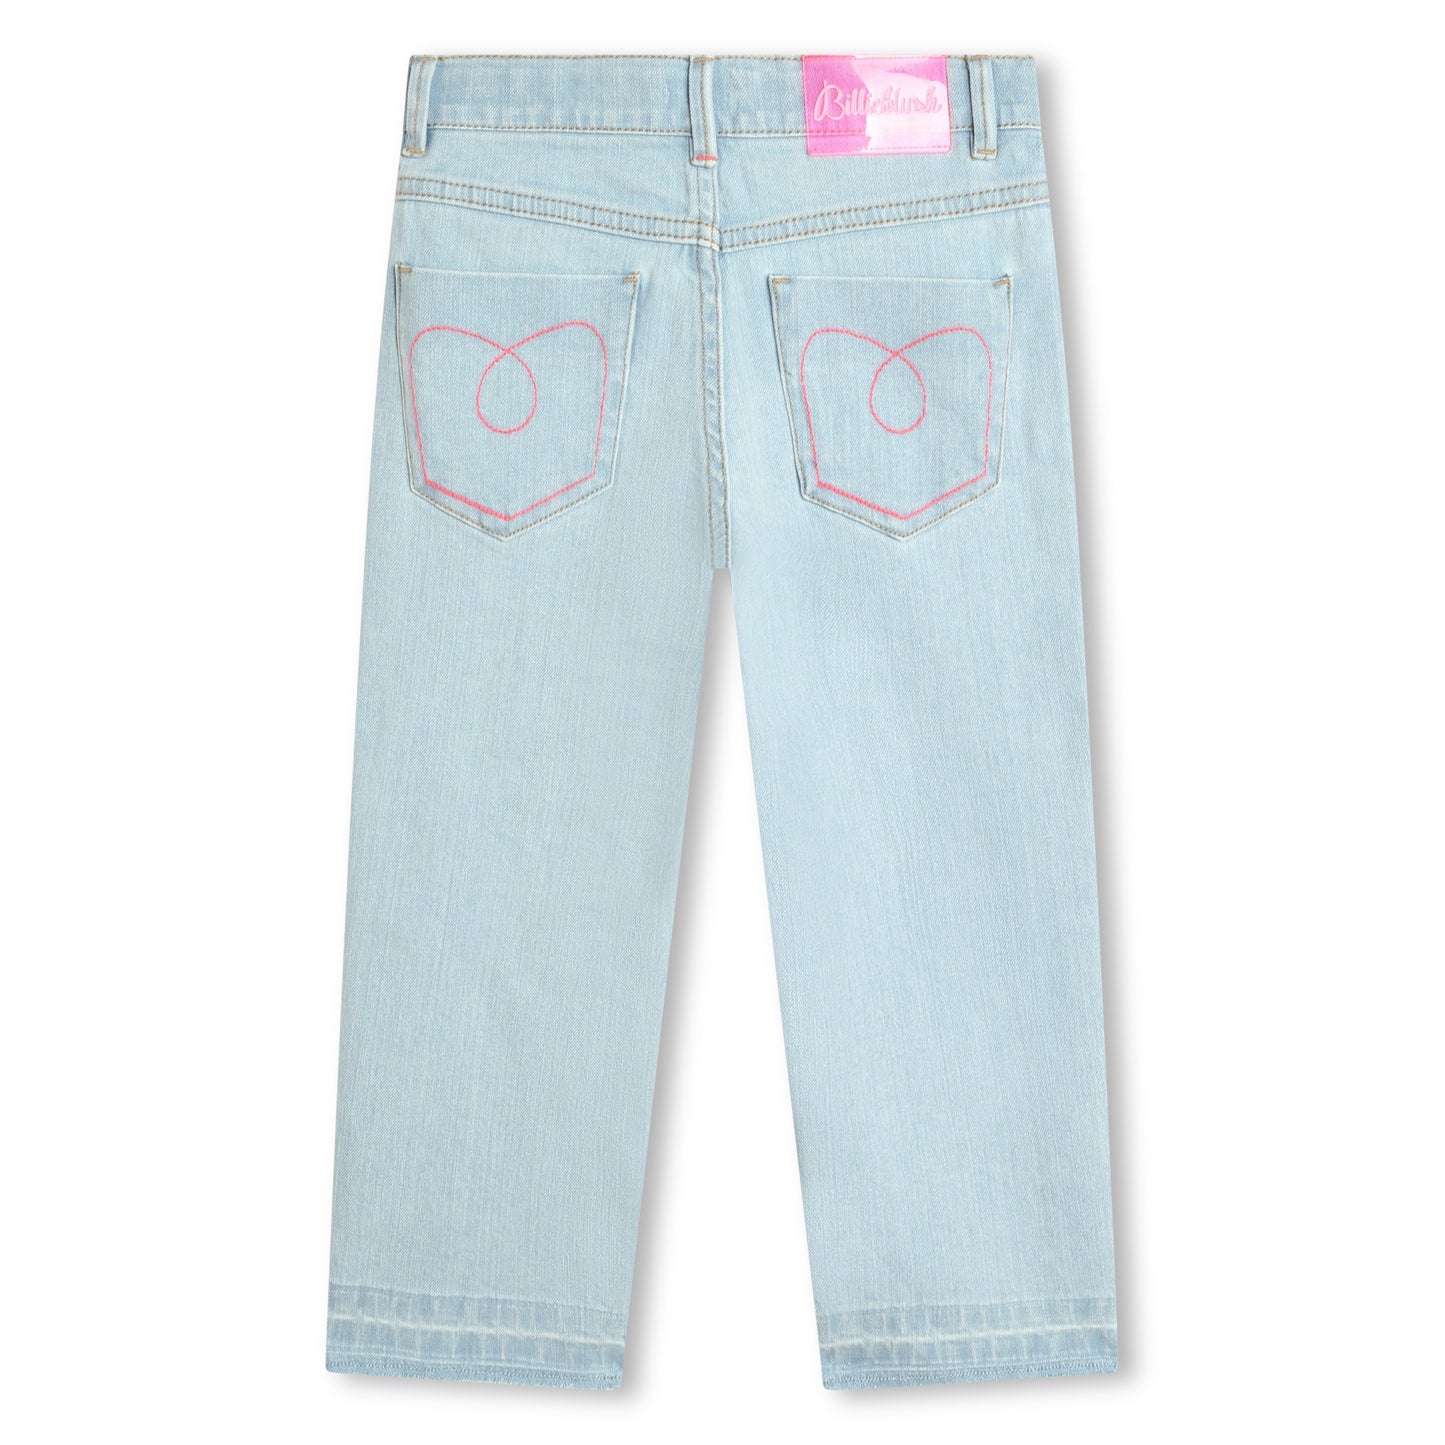 Billie Blush Girl's 5-Pocket Sequined Jeans